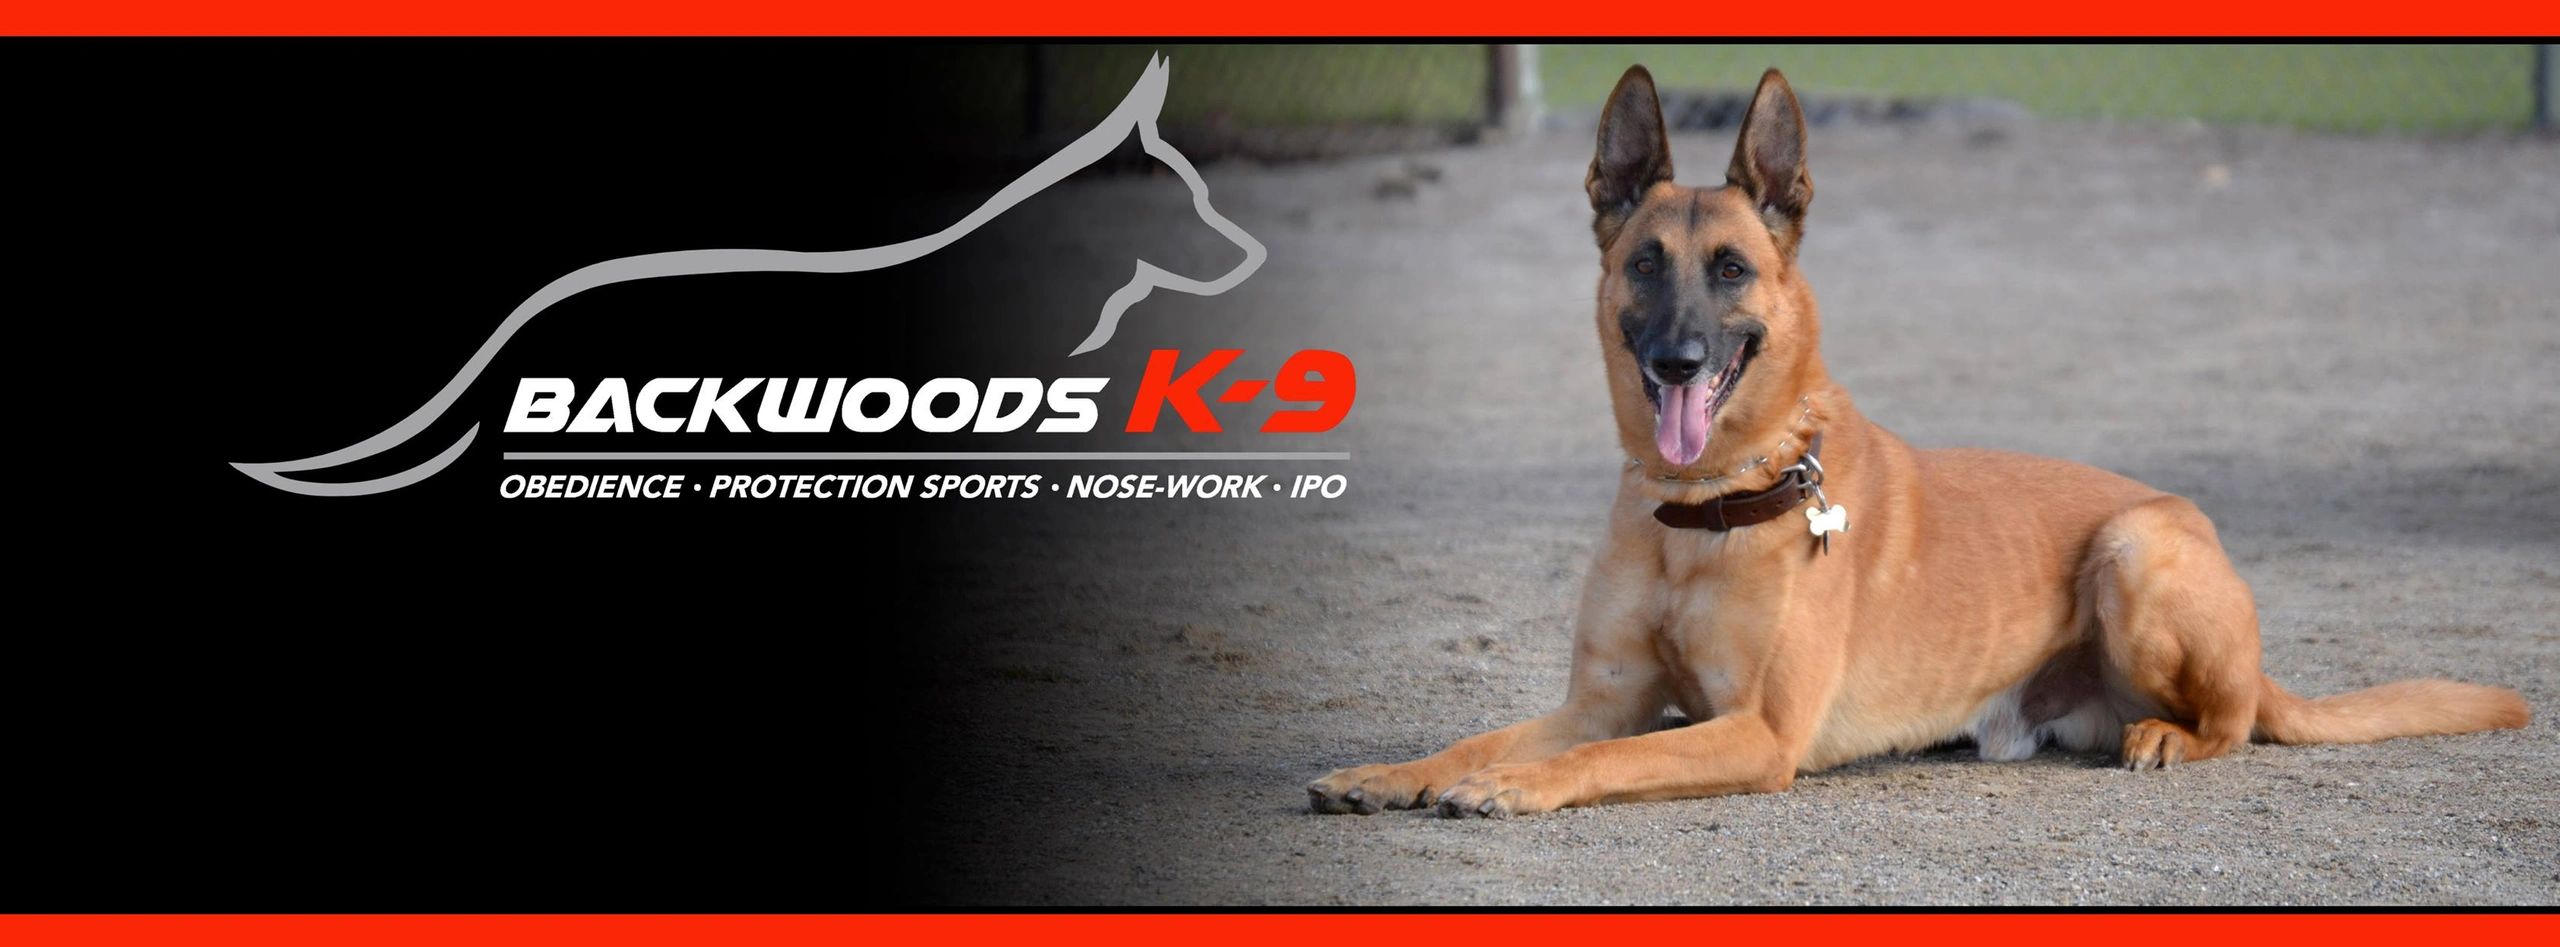 Backwoods K-9 - Dog Training, Dog Trainer, Dog Training, Sport Dog